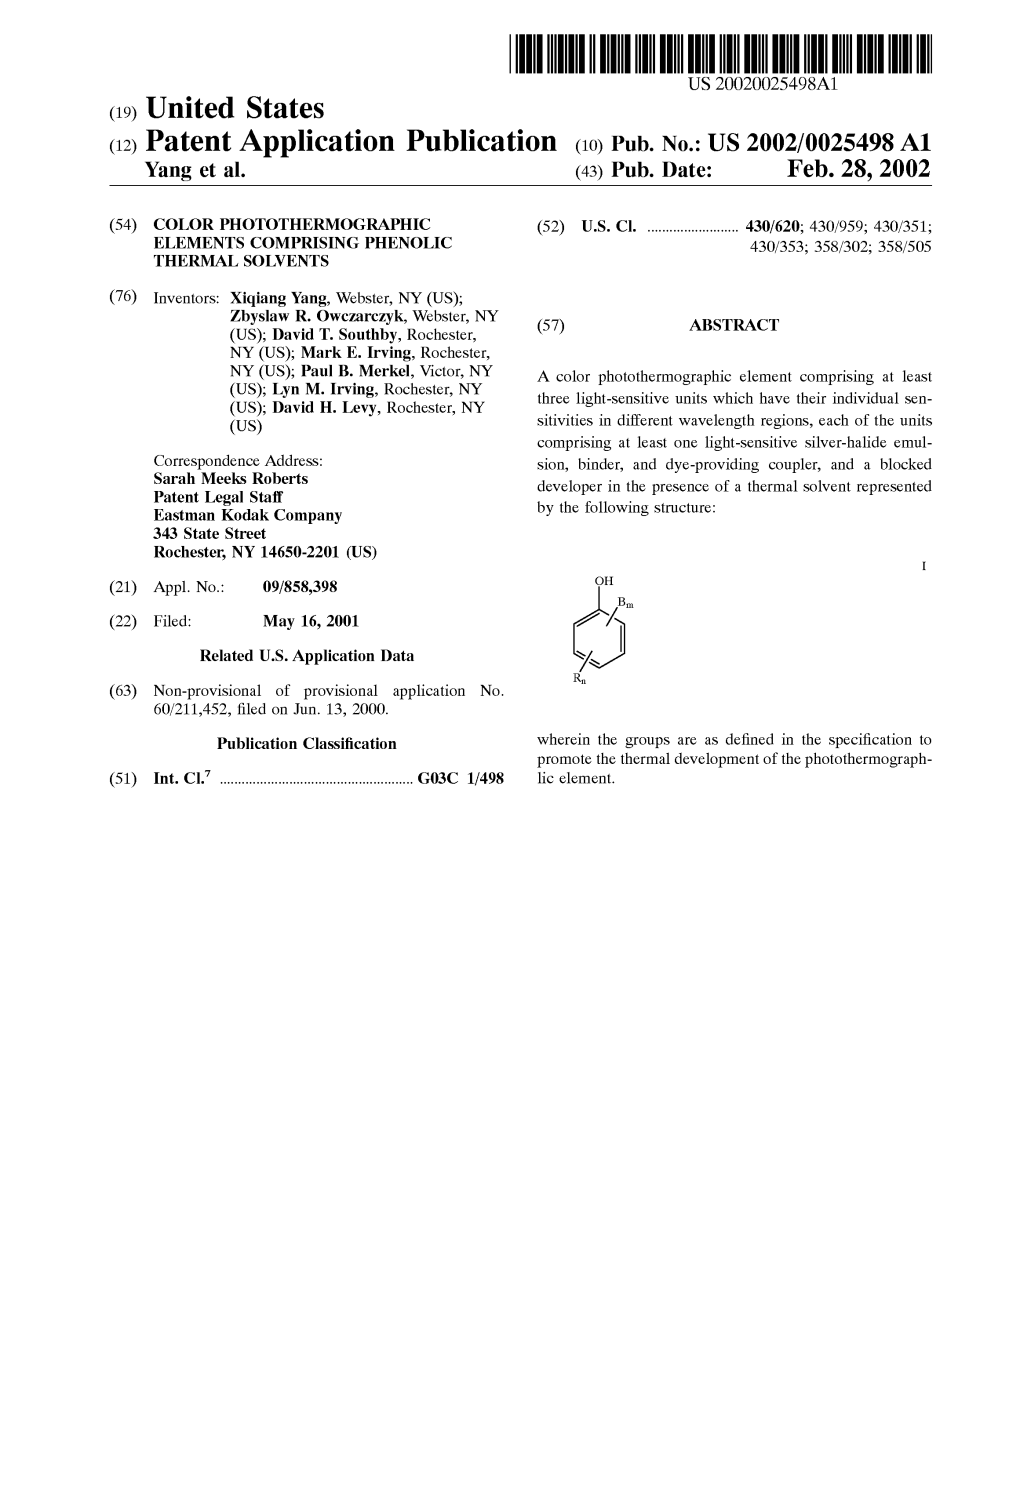 (12) Patent Application Publication (10) Pub. No.: US 2002/0025498A1 Yang Et Al